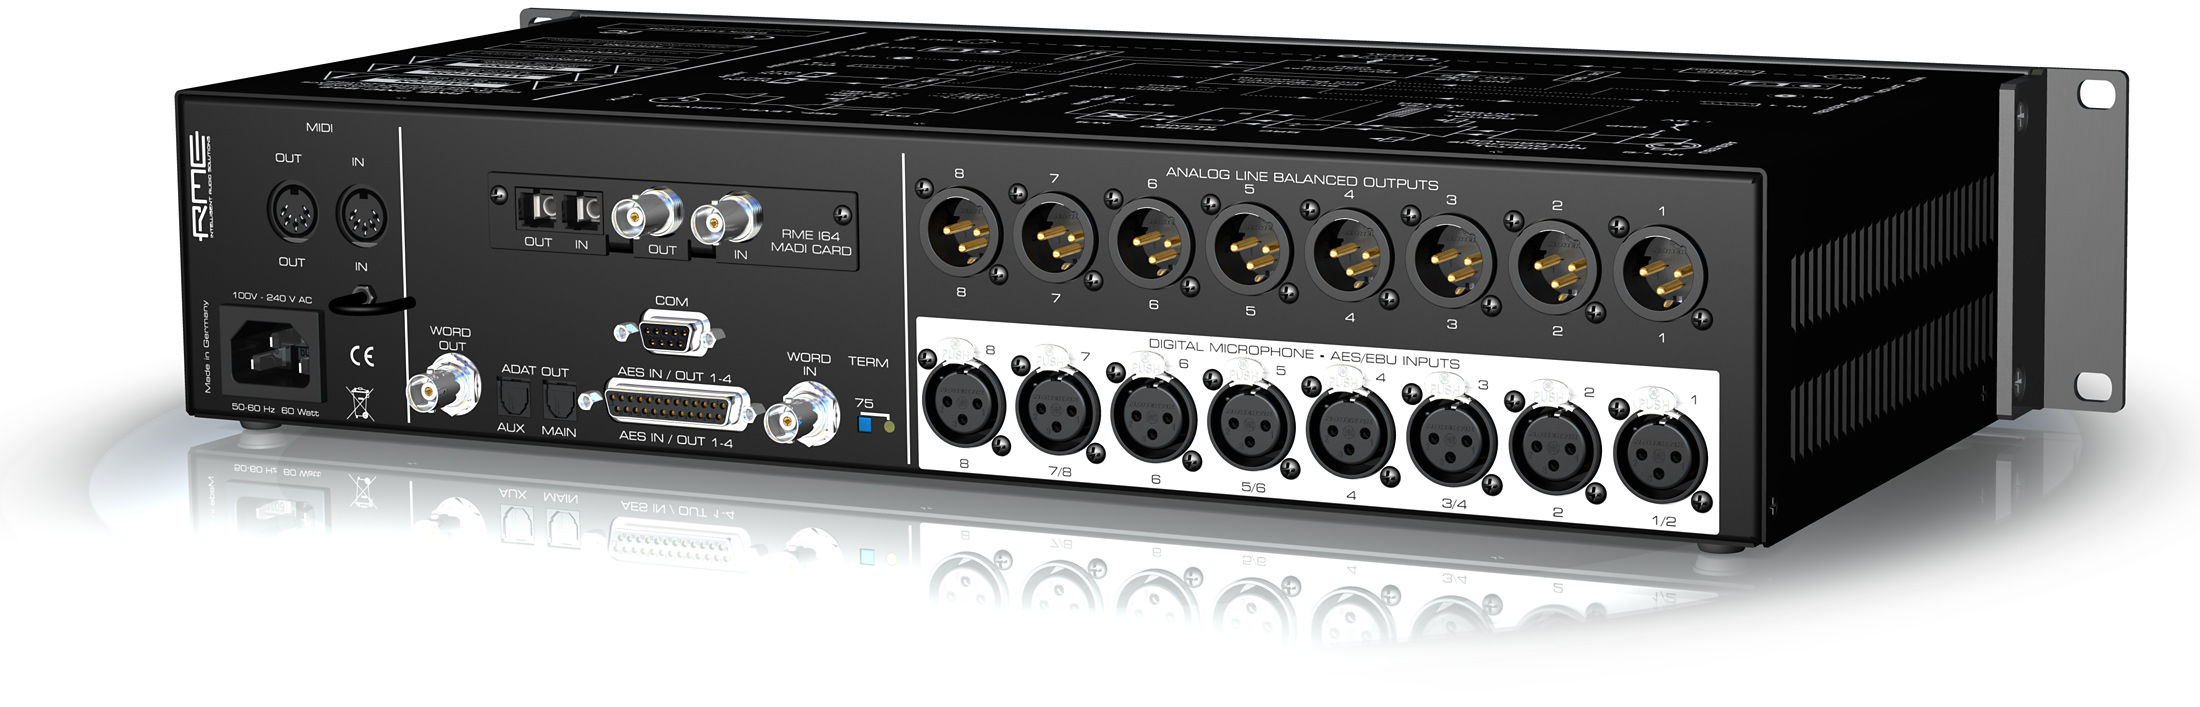 Rme Dmc-842-m - Interface de audio USB - Variation 2